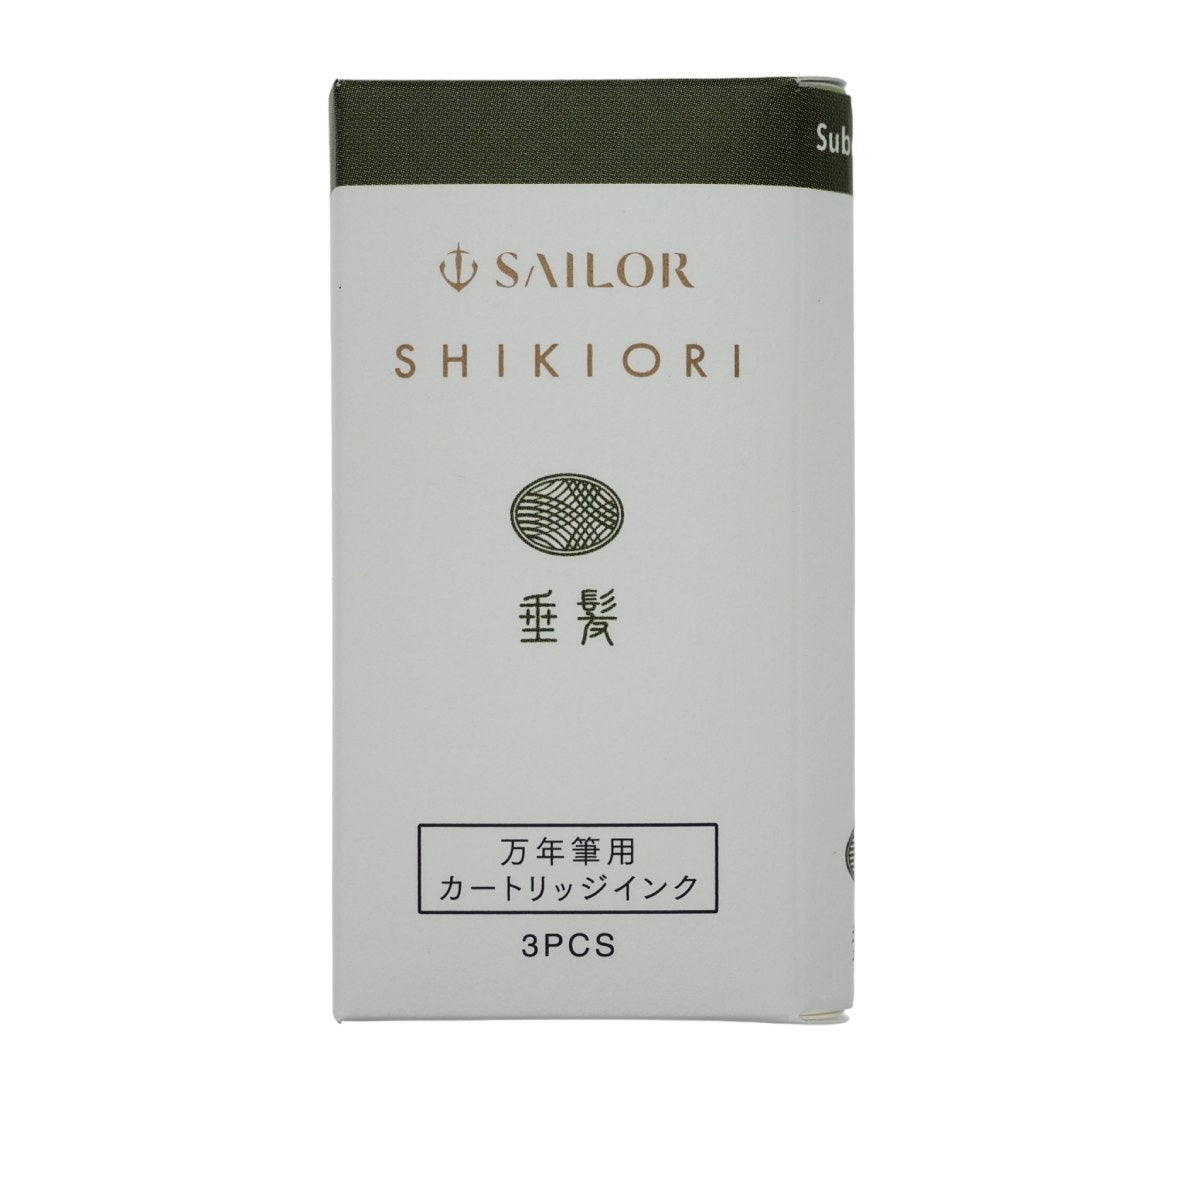 Sailor Shikiori Tintenpatronen - Suberakashi